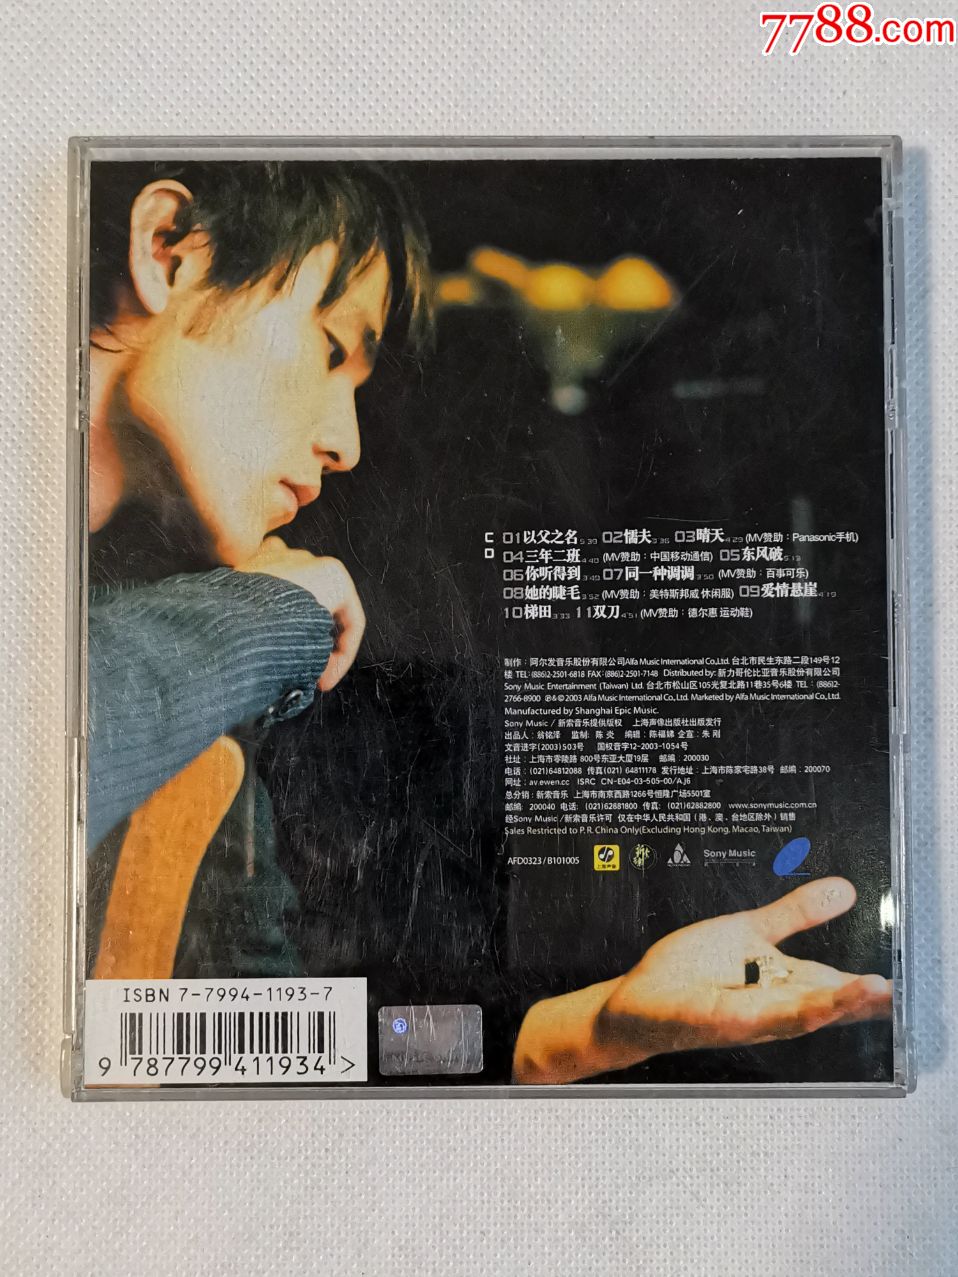 周杰伦专辑《叶惠美》,上海声像正版cd